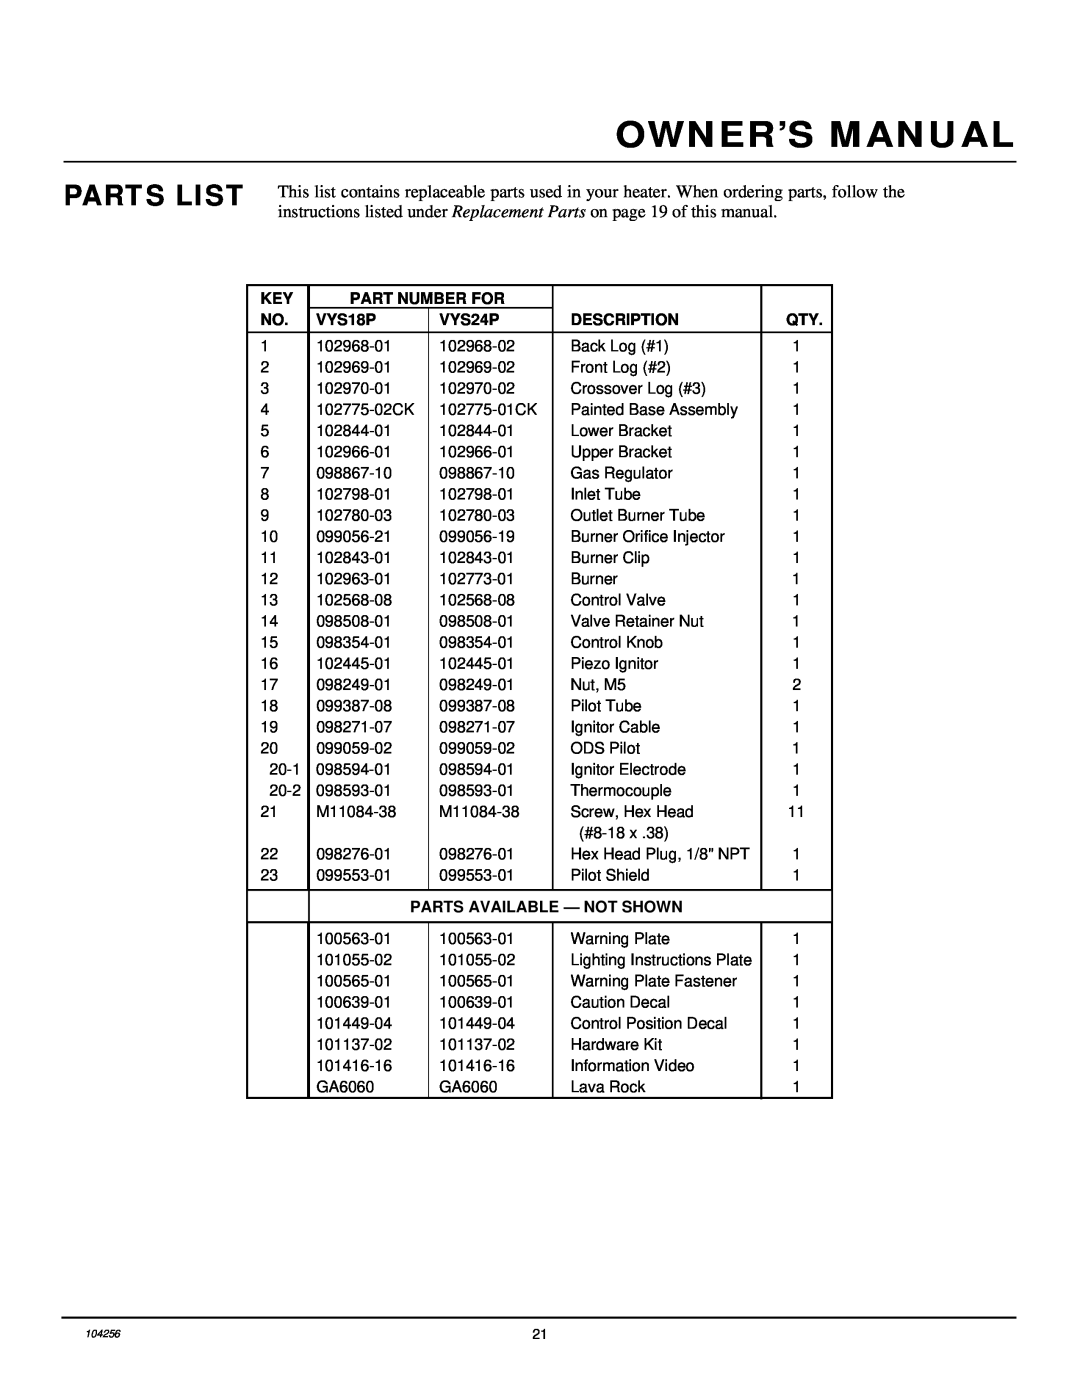 Desa UNVENTED (VENT-FREE) PROPANE/LP GAS LOG HEATER Parts List, Part Number For, VYS18P, VYS24P, Description 